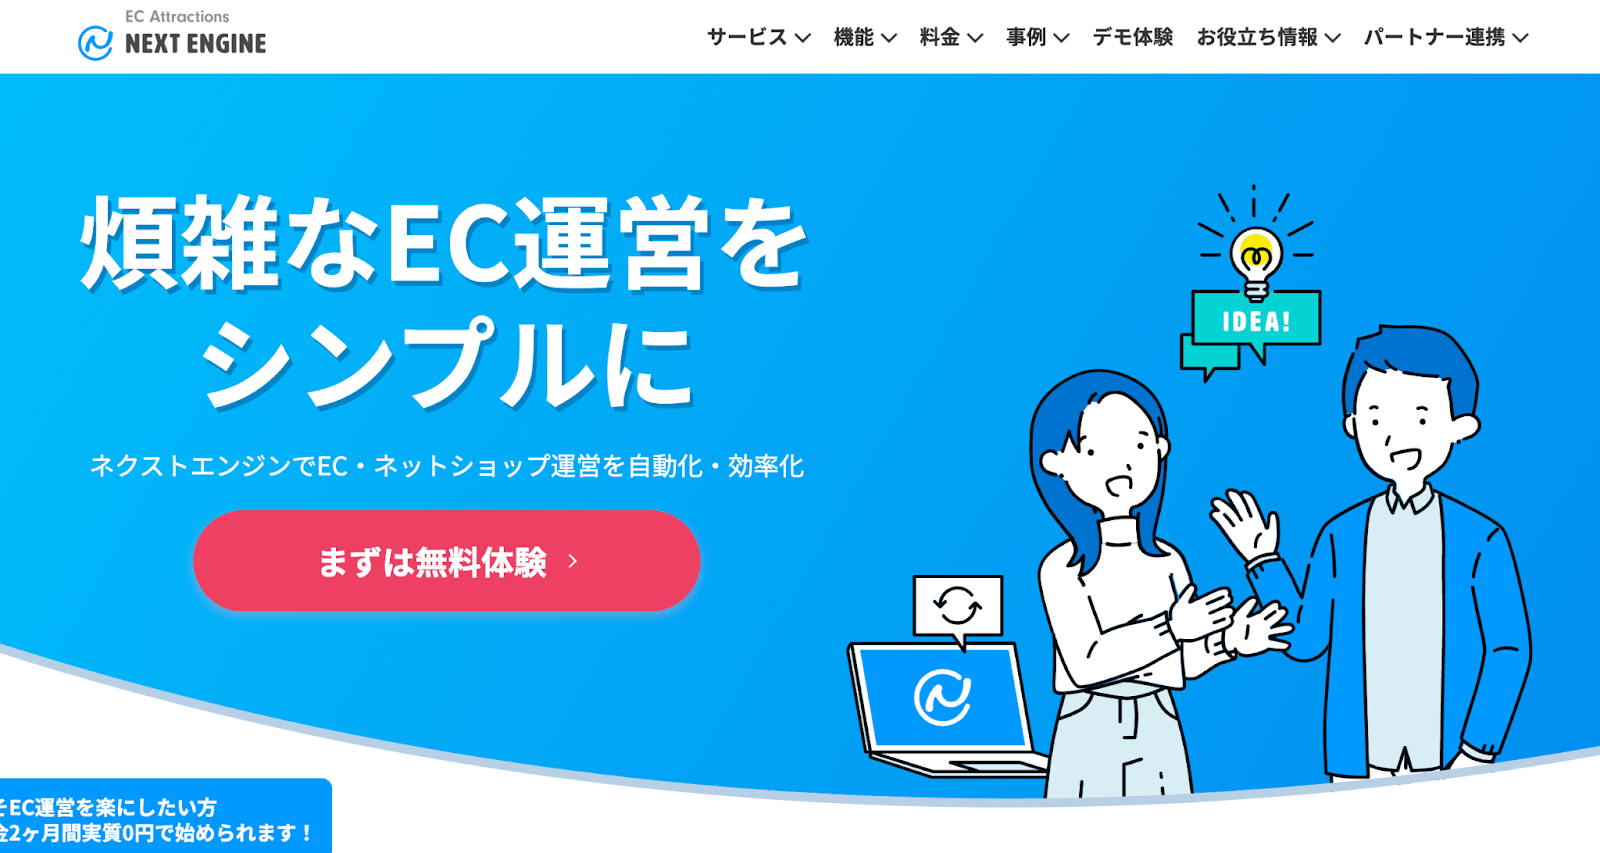 ECサイト一元管理システムである、ネクストエンジンのホームページの画像